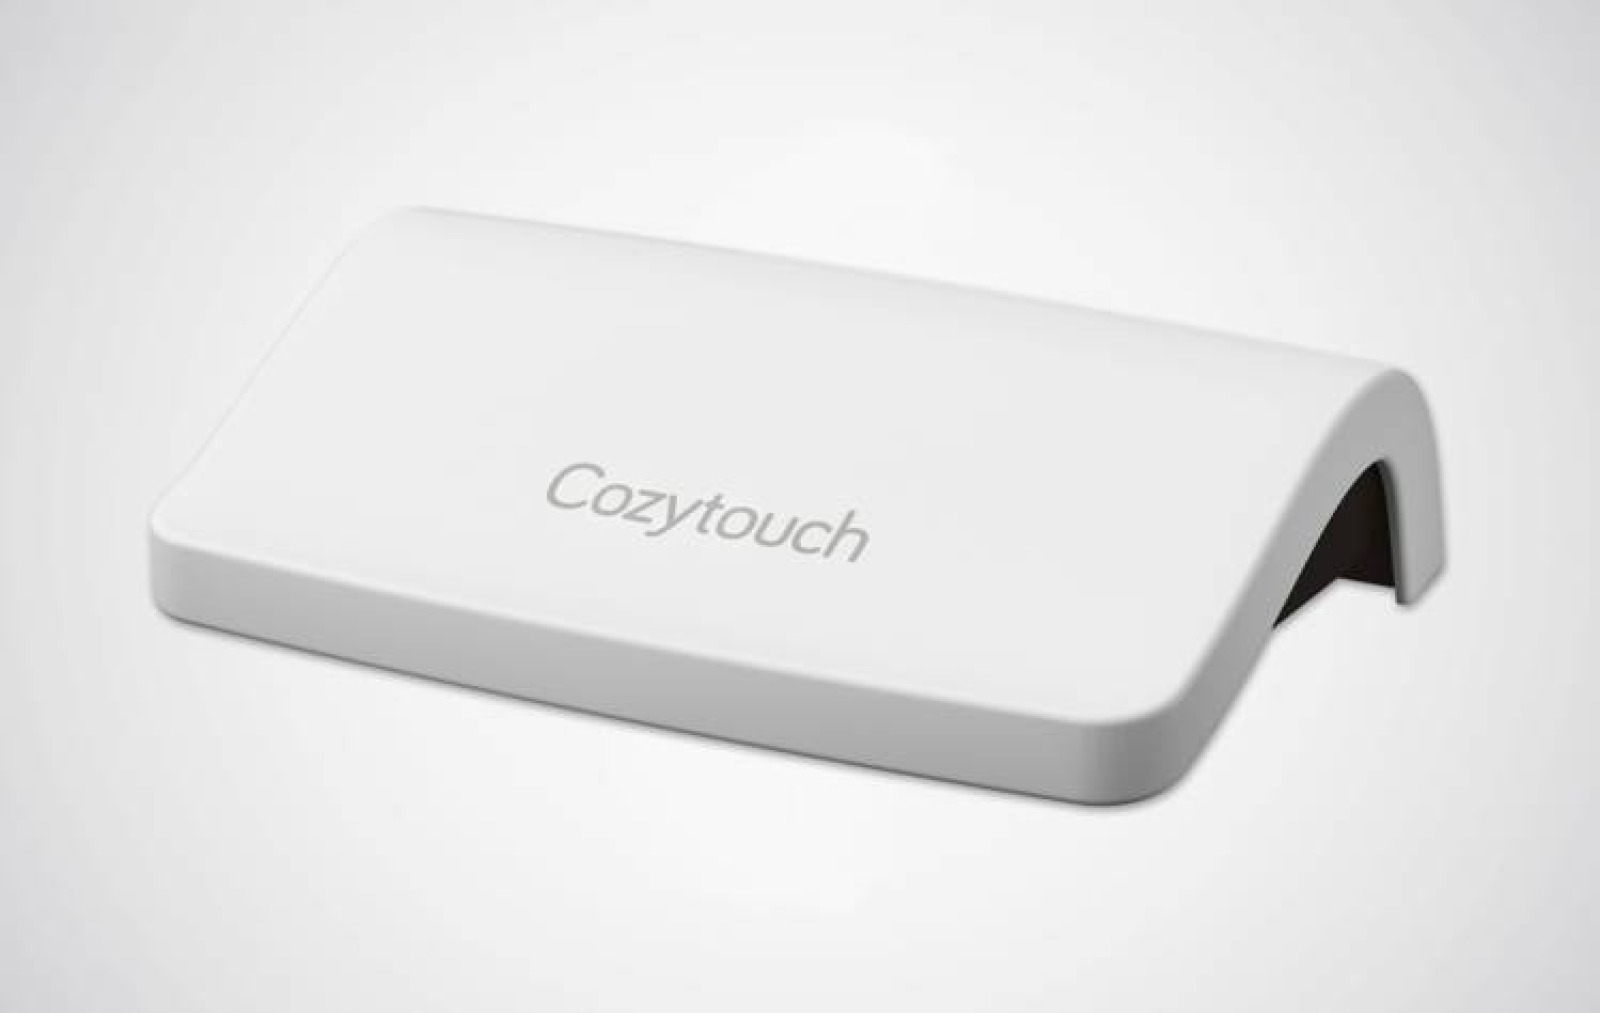 Bridge Cozytouch V2 pour connecter en WiFi les produits compatibles